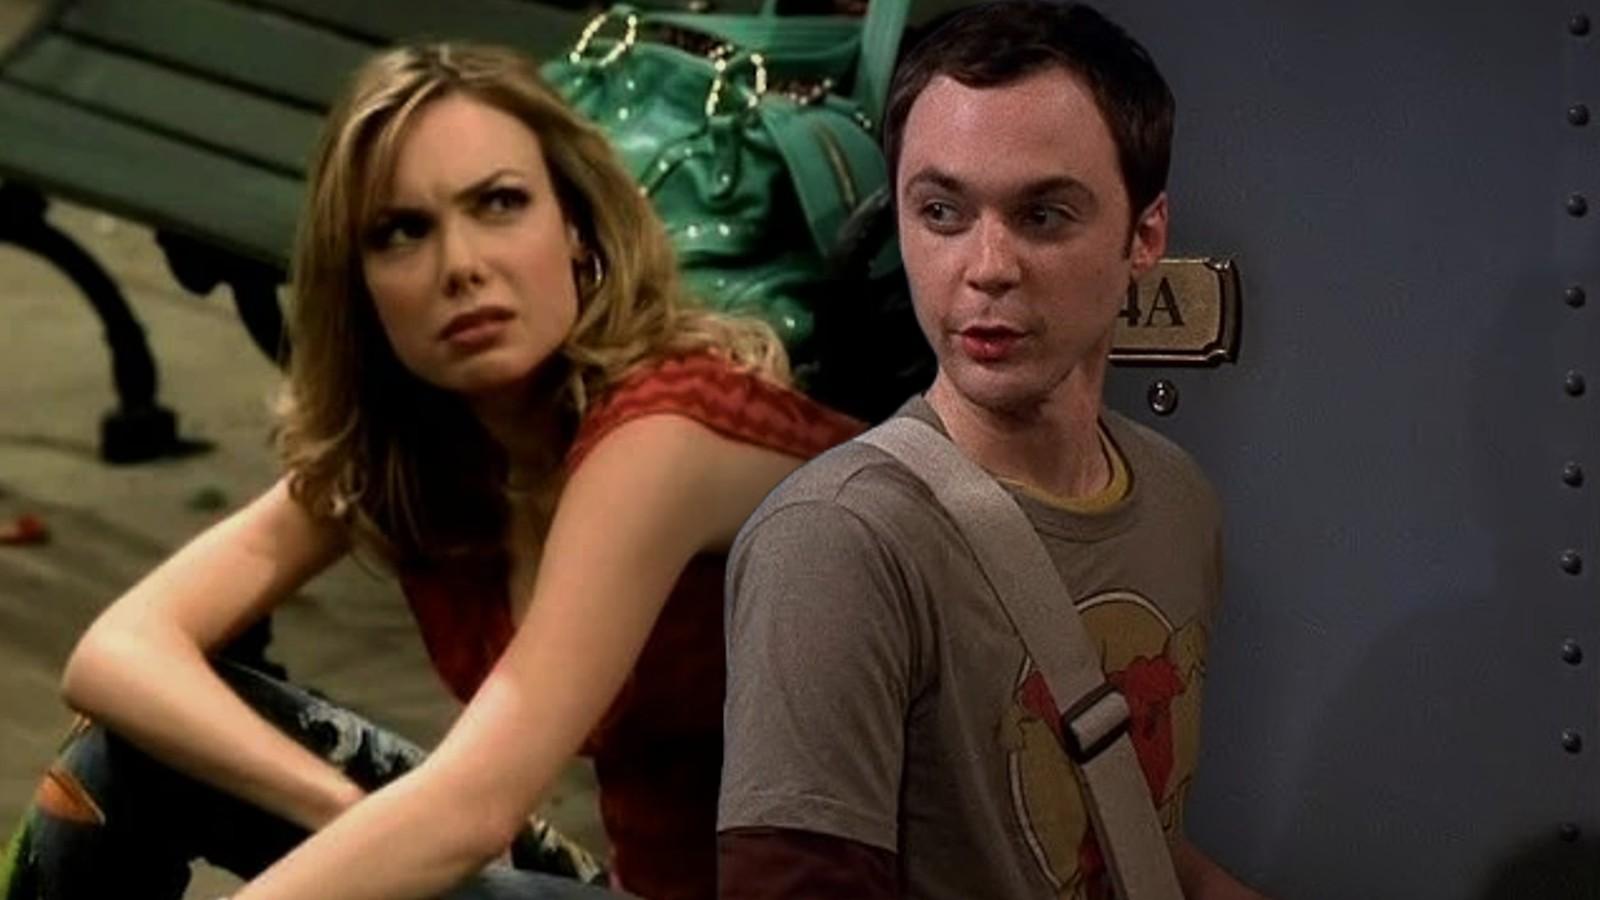 Amanda Walsh as Katie in the unaired Big Bang Theory pilot and Sheldon